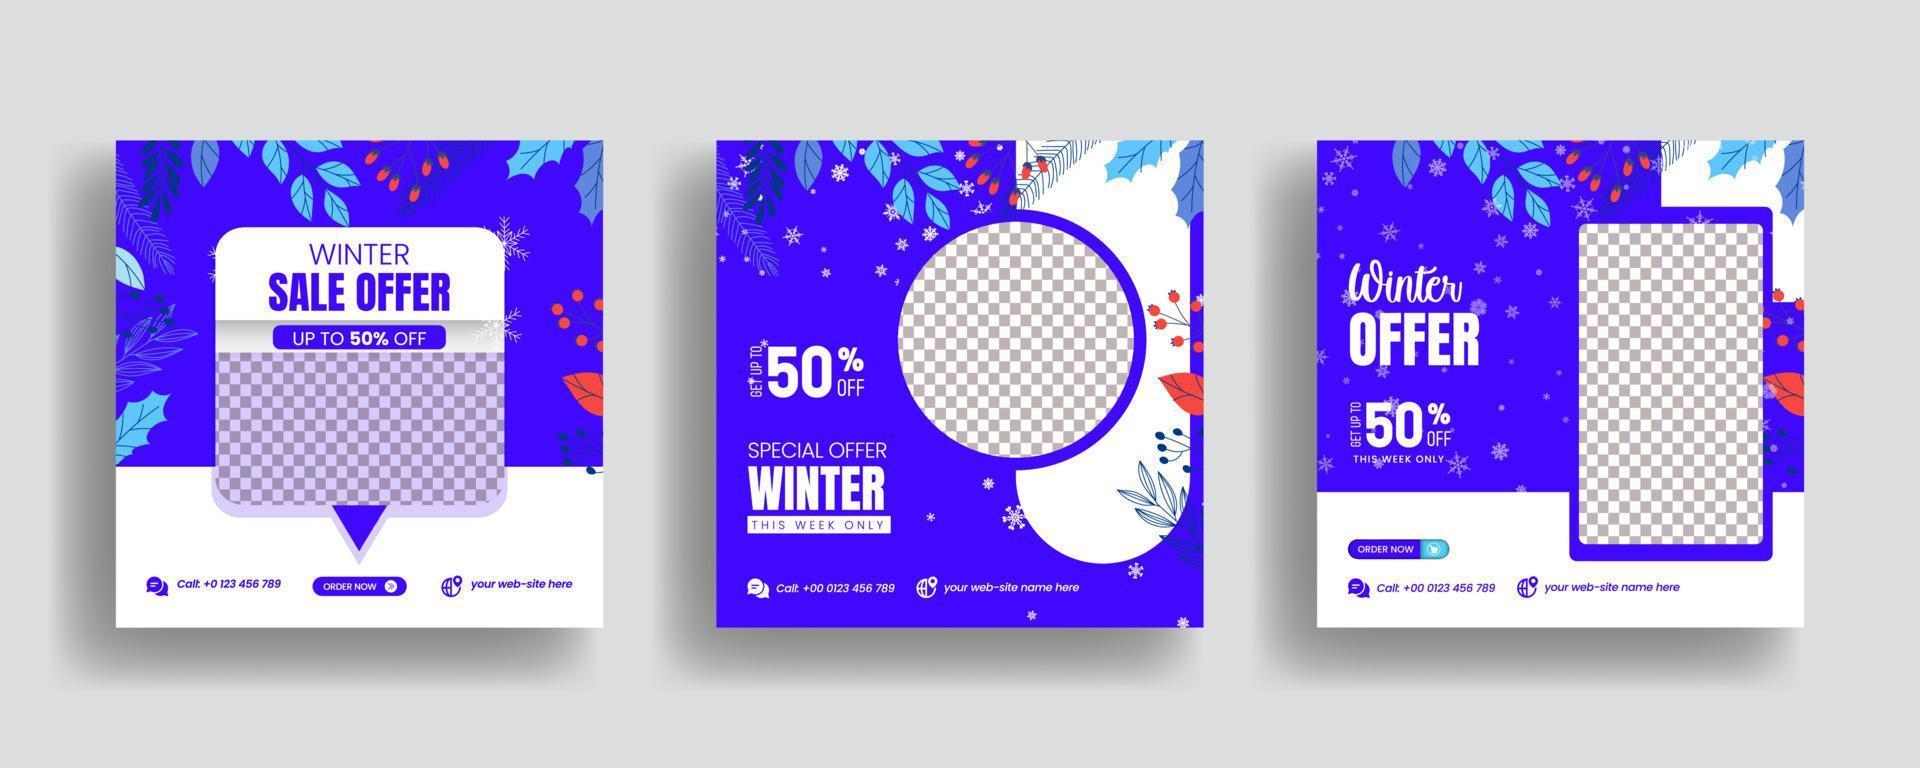 Social-Media-Post für den Wintermodeverkauf, Web-Banner-Anzeigenvorlage mit modernem 3D-Stil, geeignet für Website-Banner, quadratische Flyer oder Poster und Marketing-Flyer-Design vektor